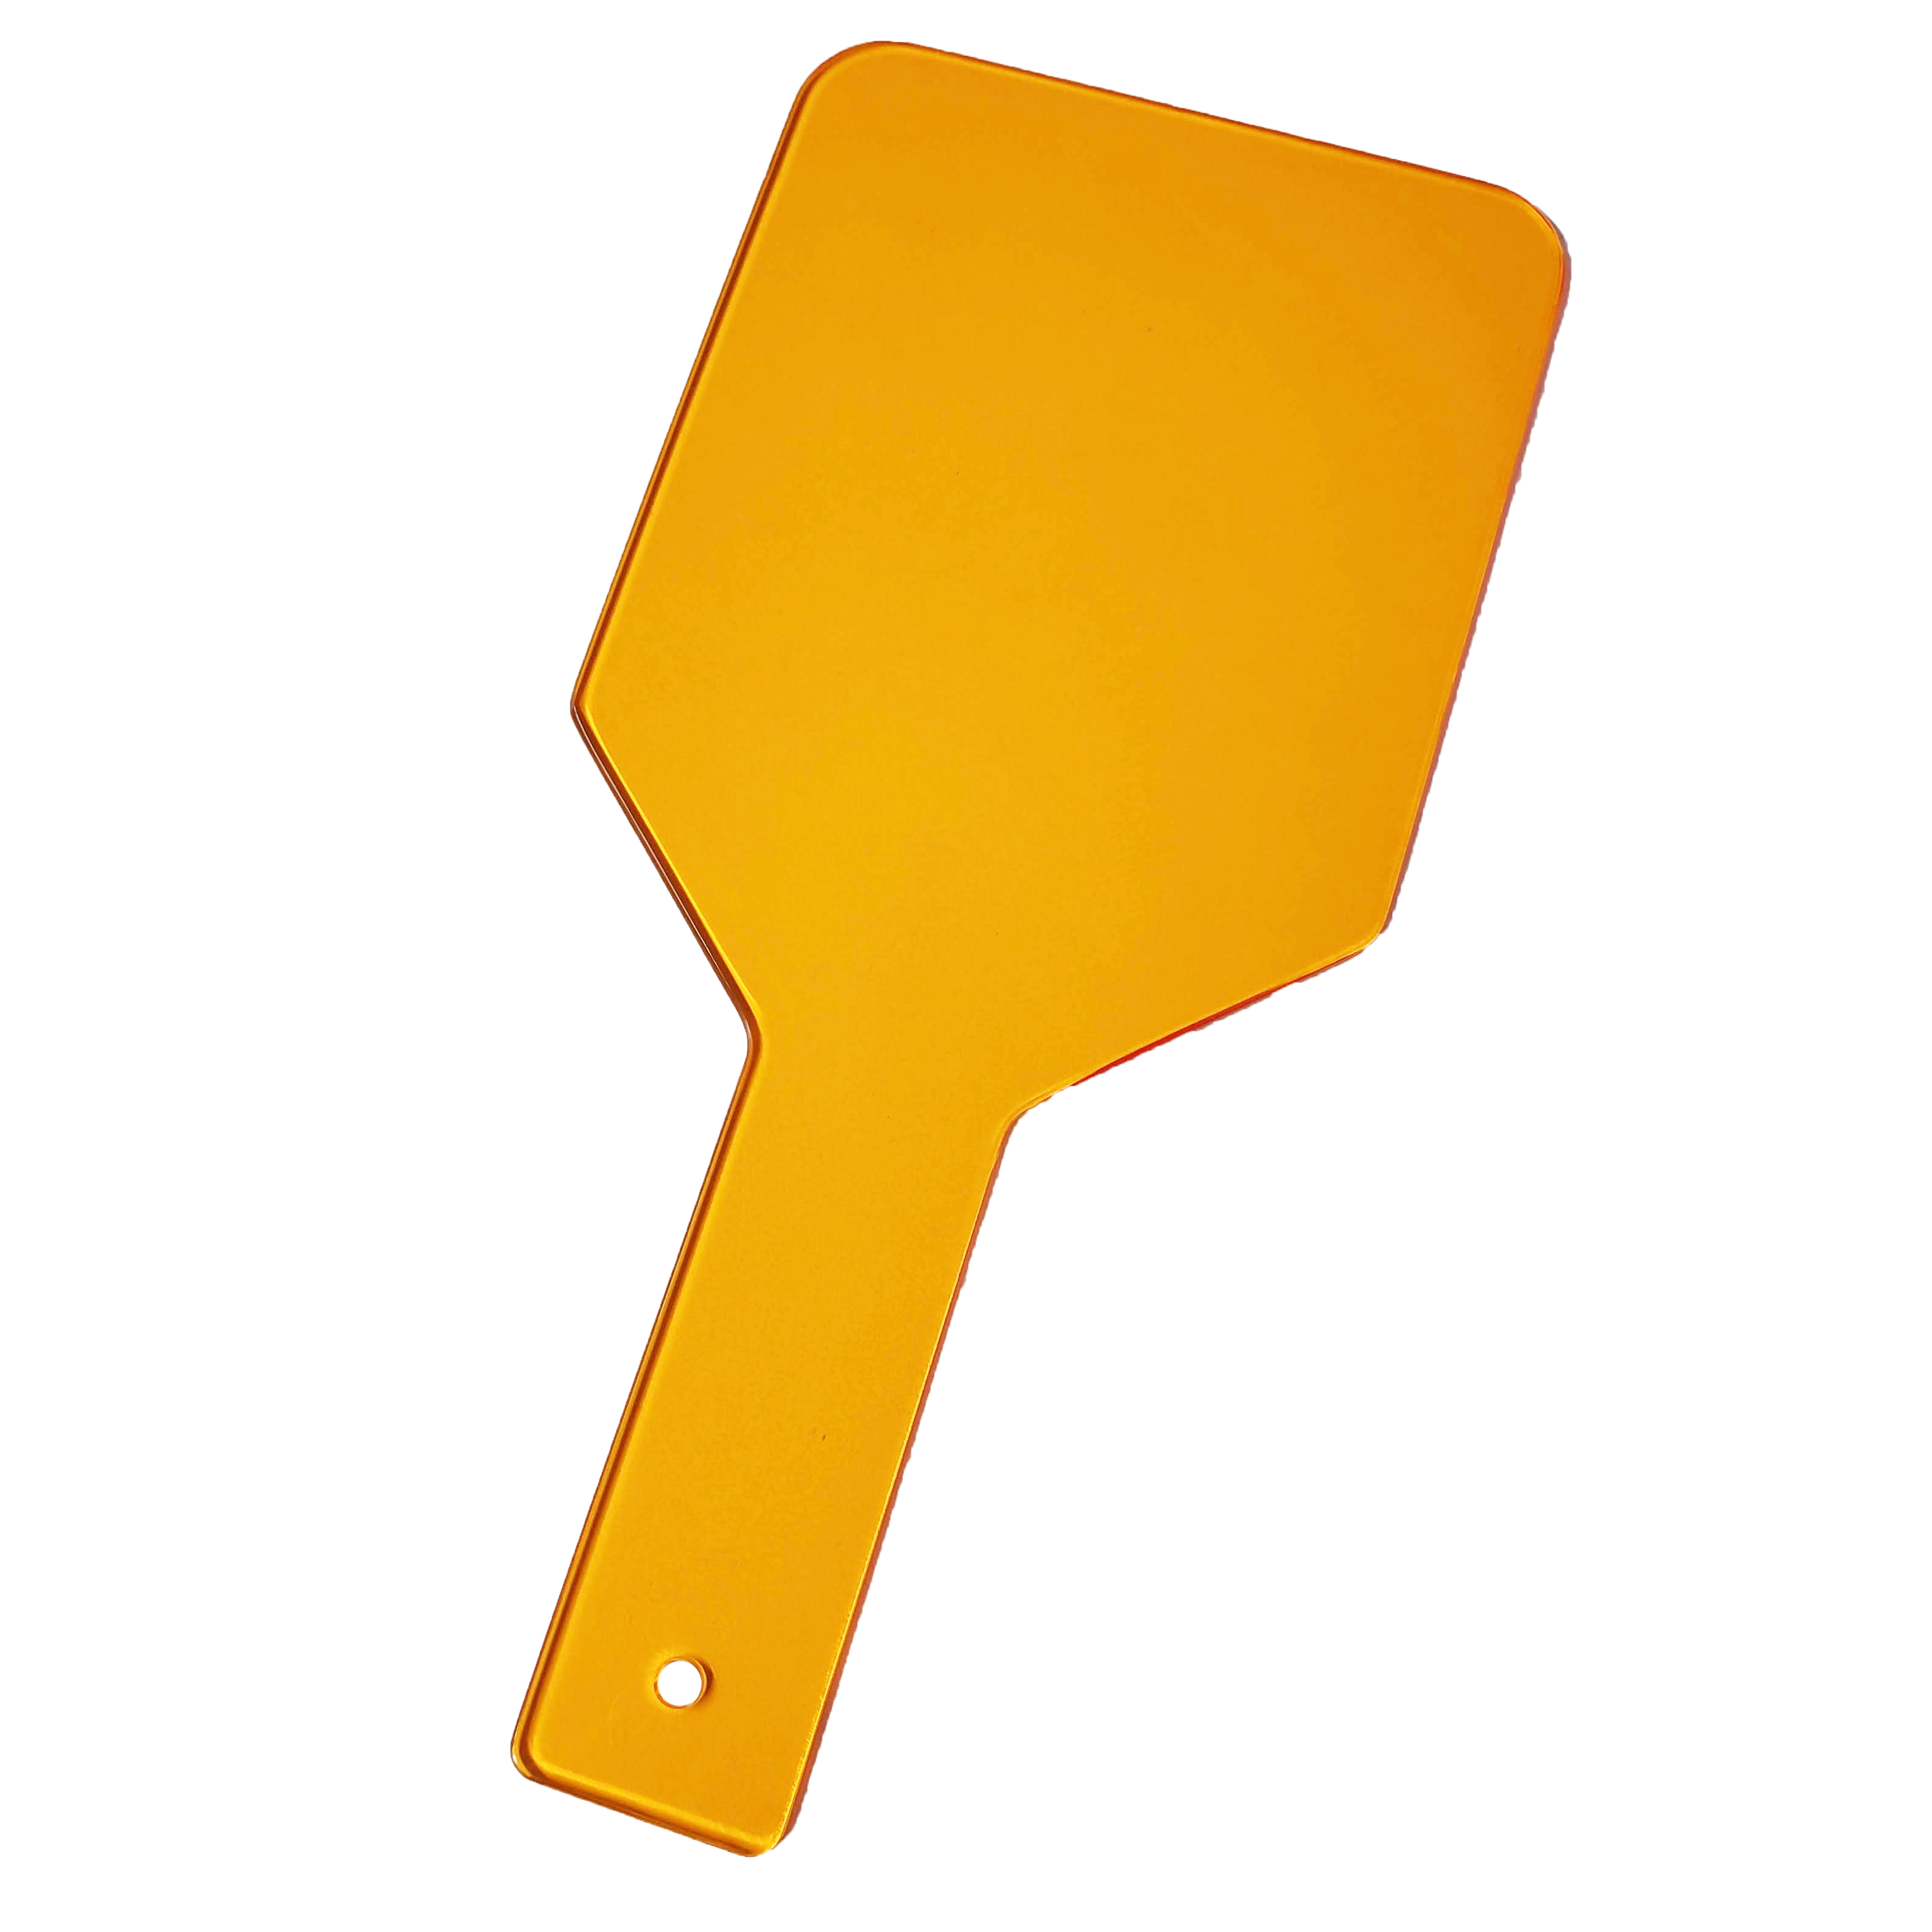 Kézi fotopolimerizációs lámpa fénye elleni védőpajzs, 1 db, 12,5x26x0,3 cm, narancs